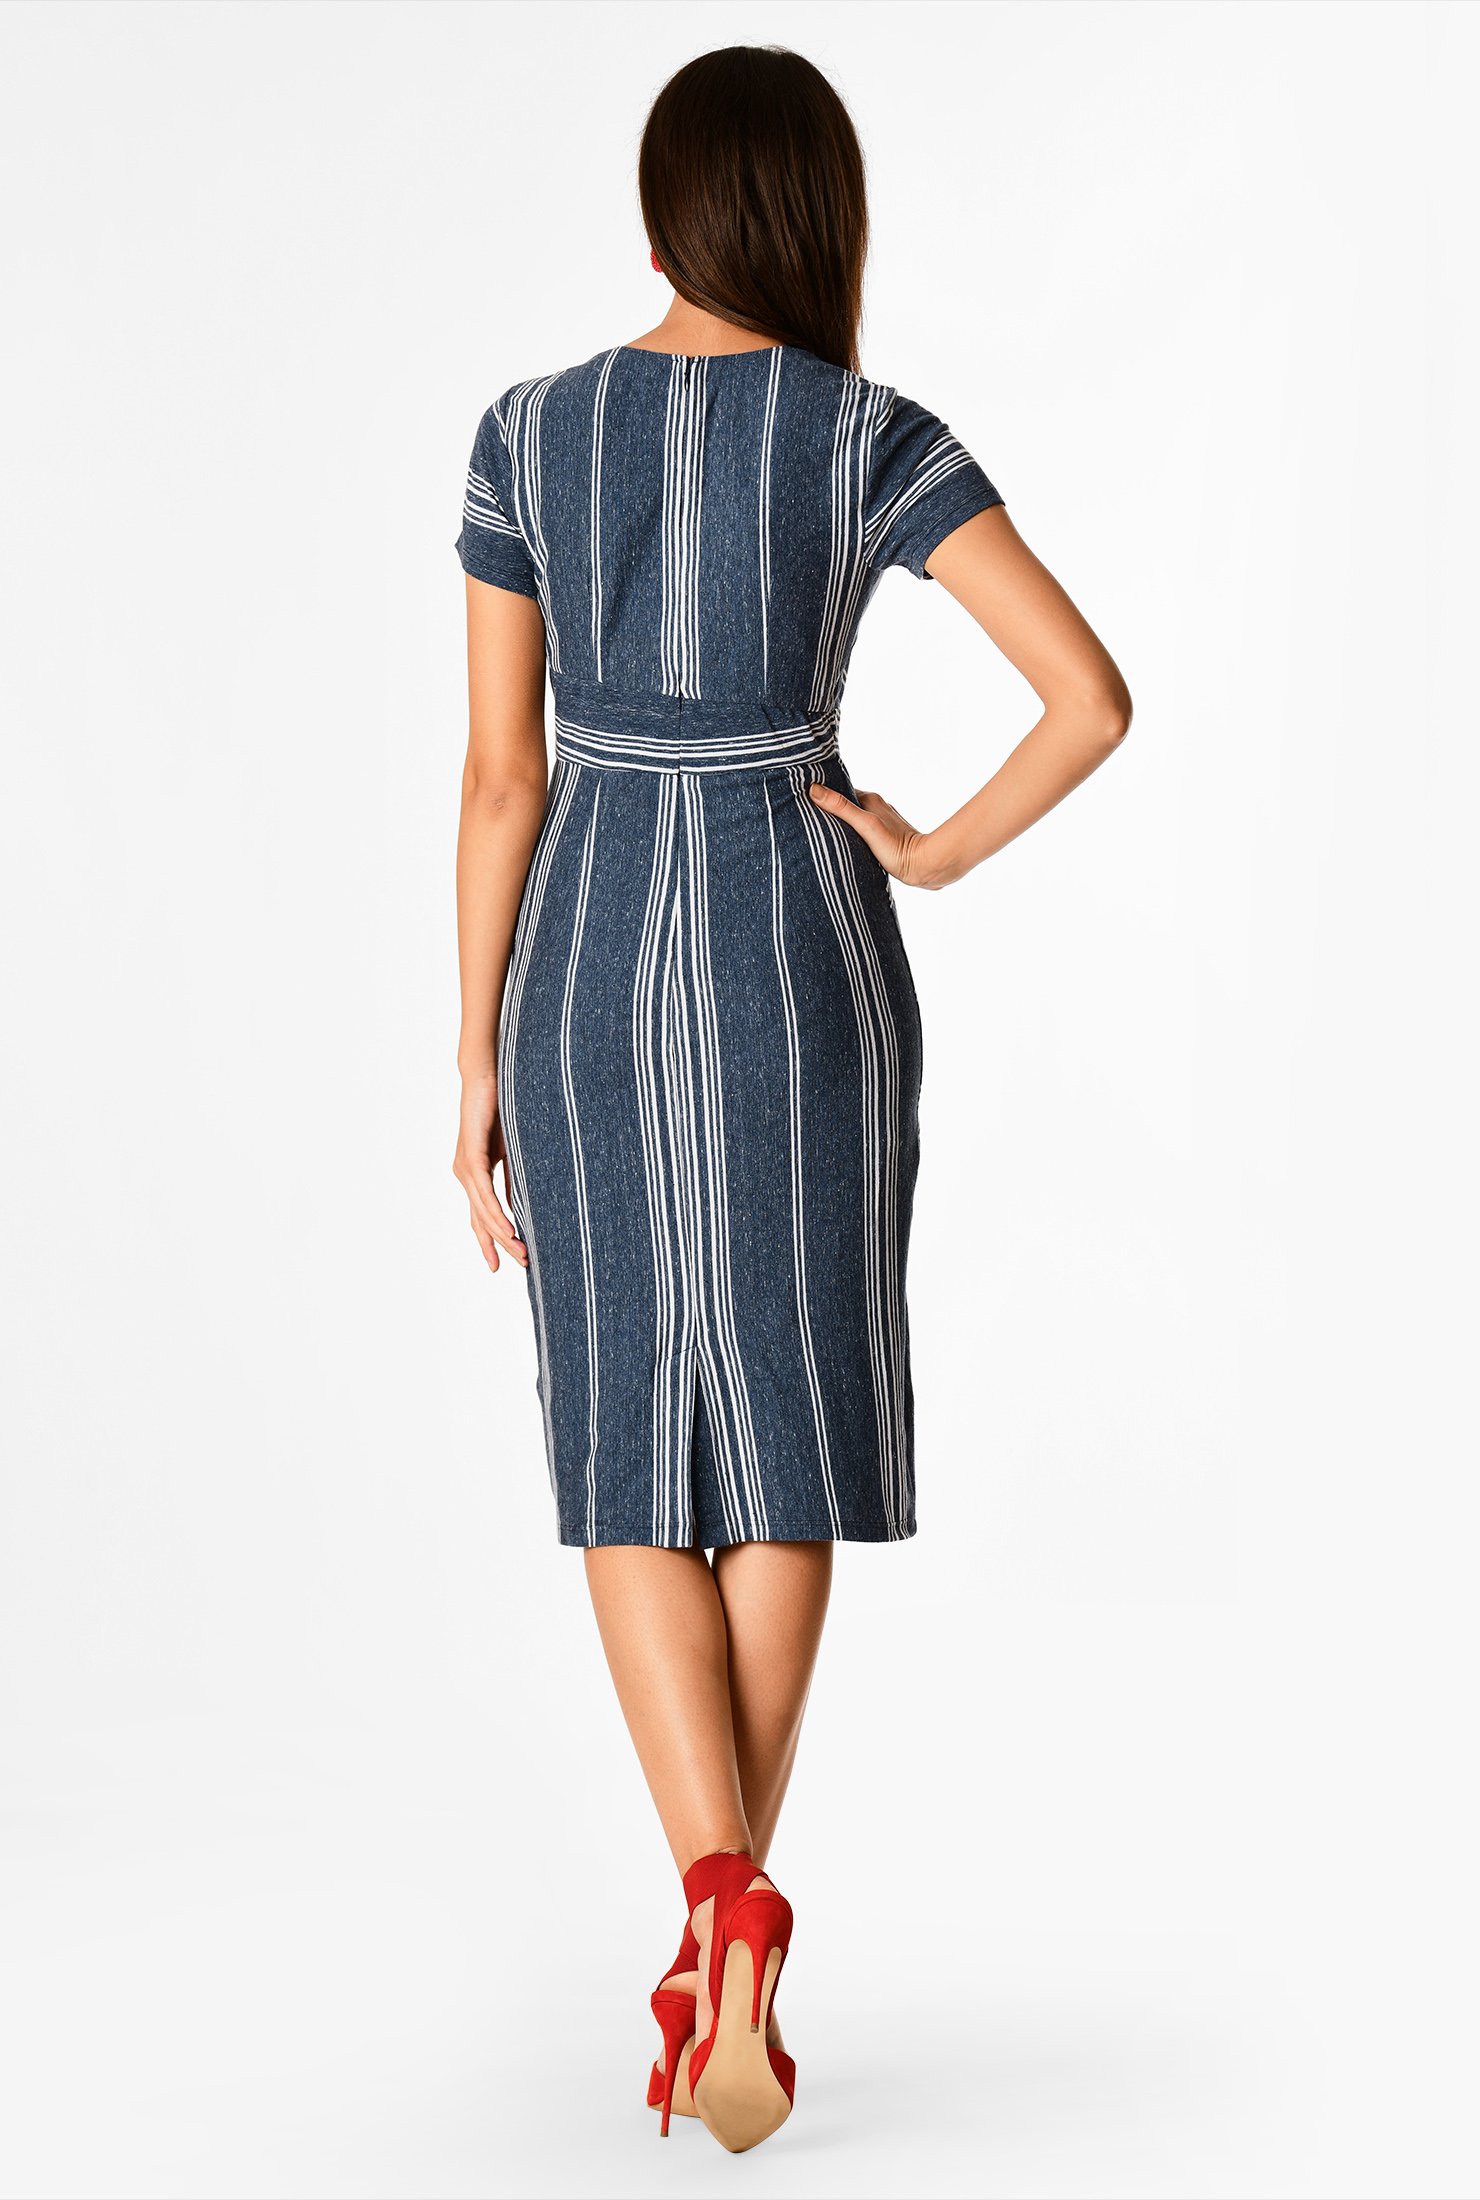 Shop Segmented stripe cotton knit sheath dress | eShakti